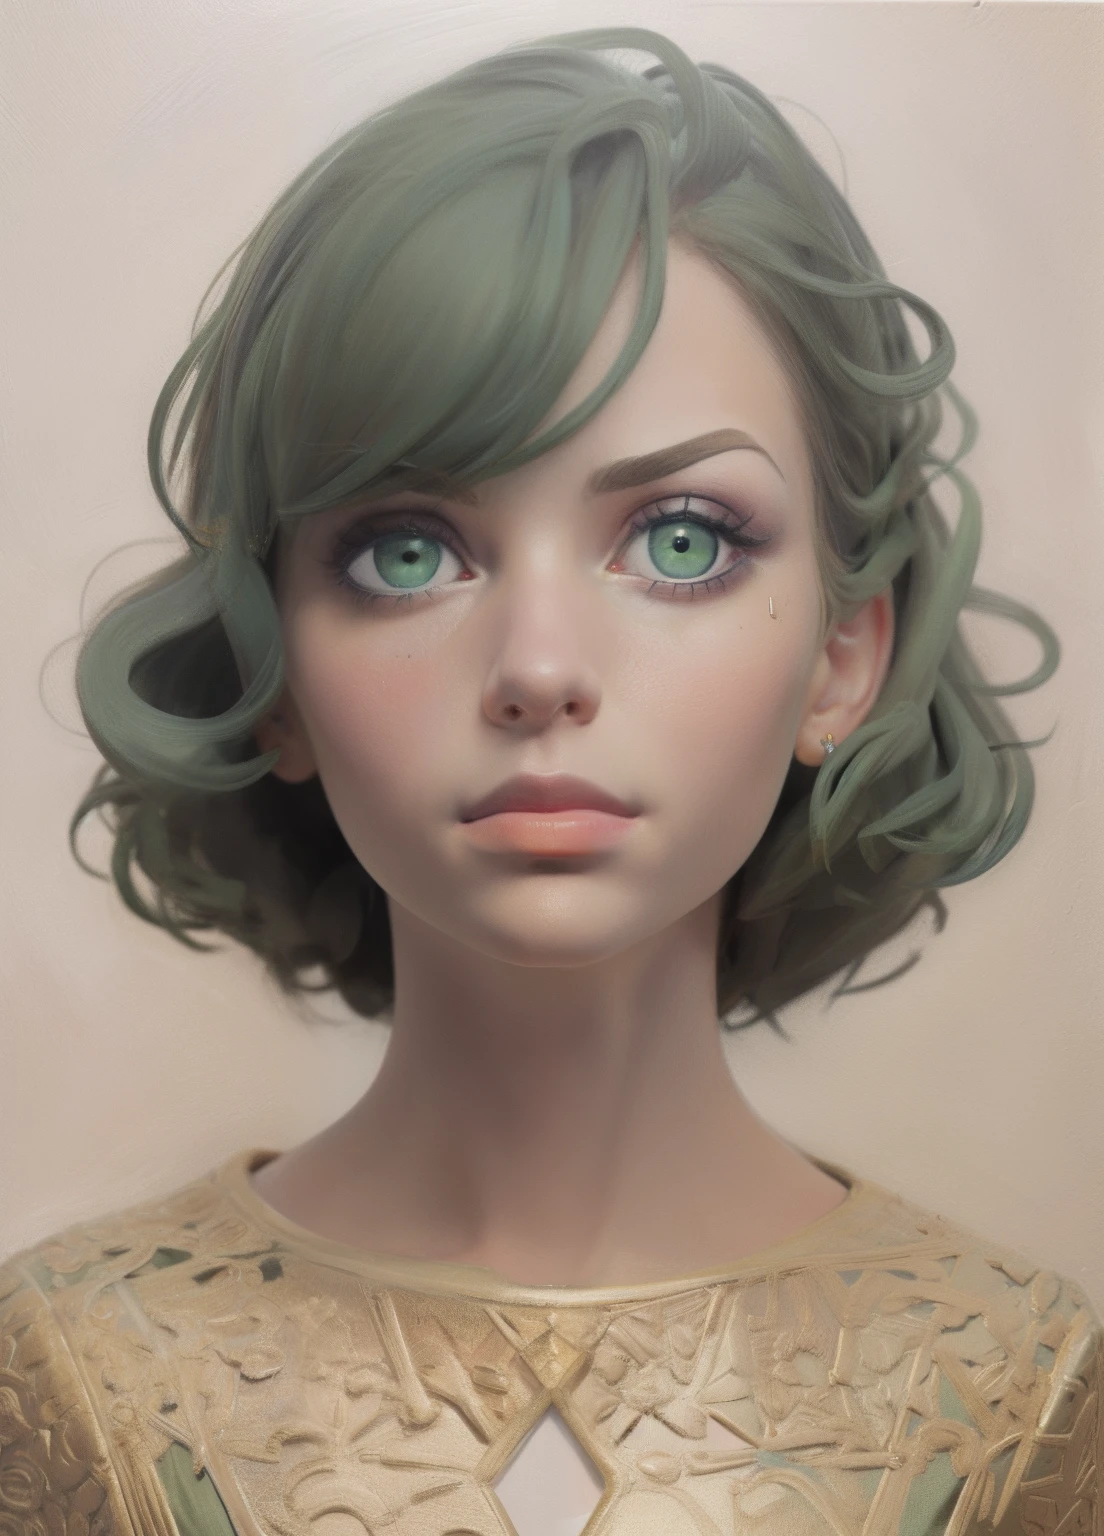 1個女孩, 肖像, 油畫, 現代的, 现实比例, 深綠色的眼睛, 漂亮的臉蛋, 對稱臉, 對稱的眼睛, 動態姿勢, 錯綜複雜, 錯綜複雜 details, 銳利的焦點